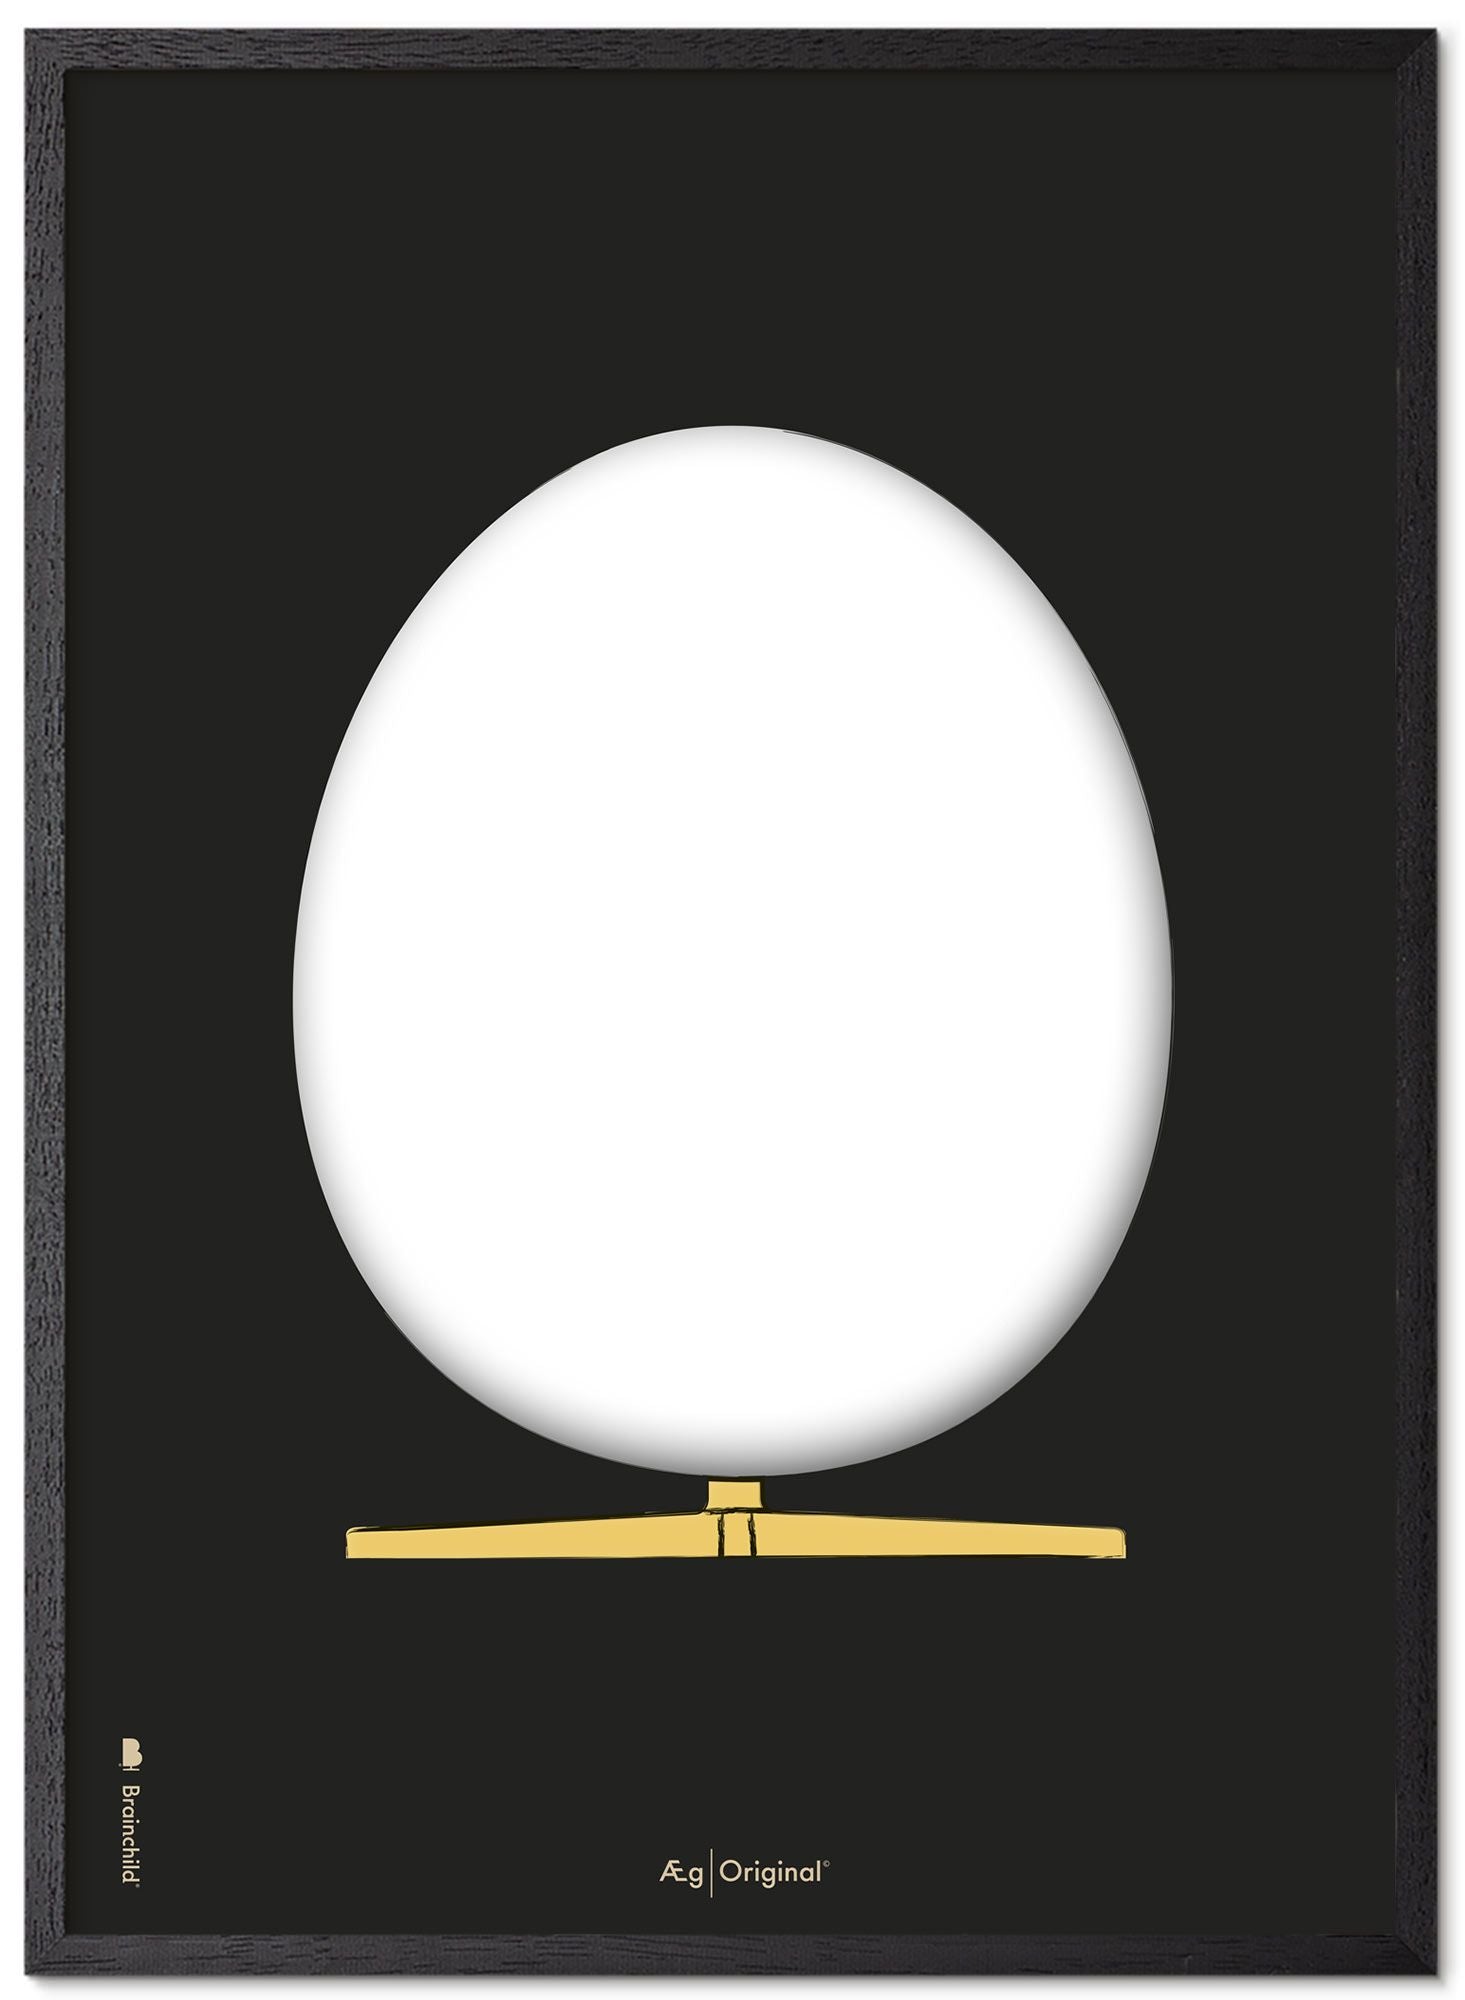 Prepare el marco de póster de boceto de diseño de huevo hecho de madera lacada negra A5, fondo negro